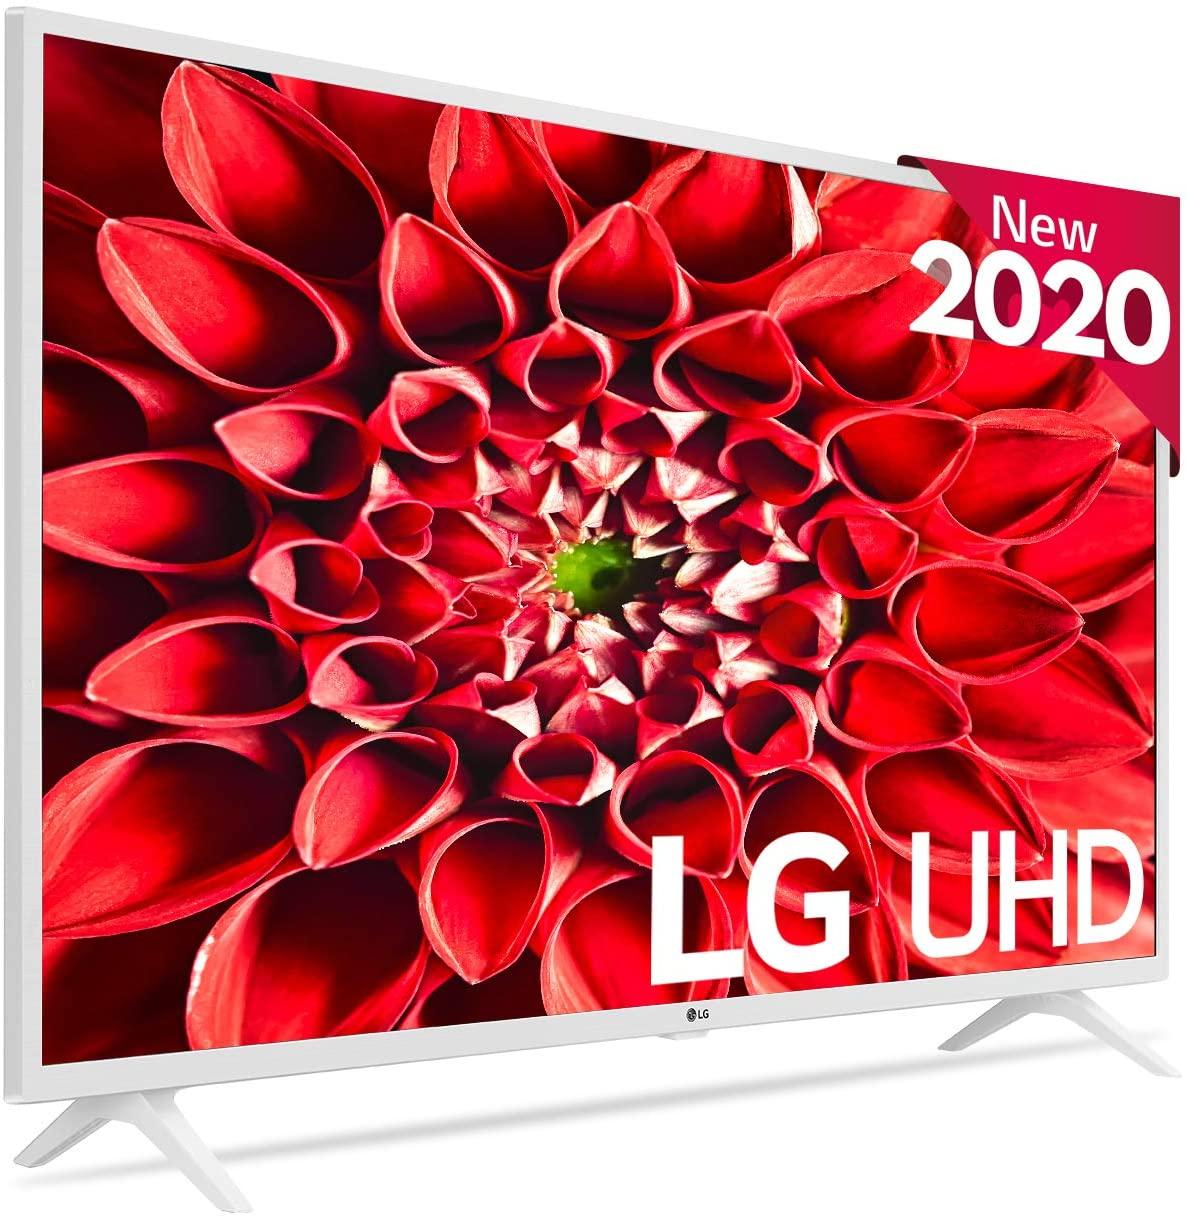 Smart TV LG 43UN7390